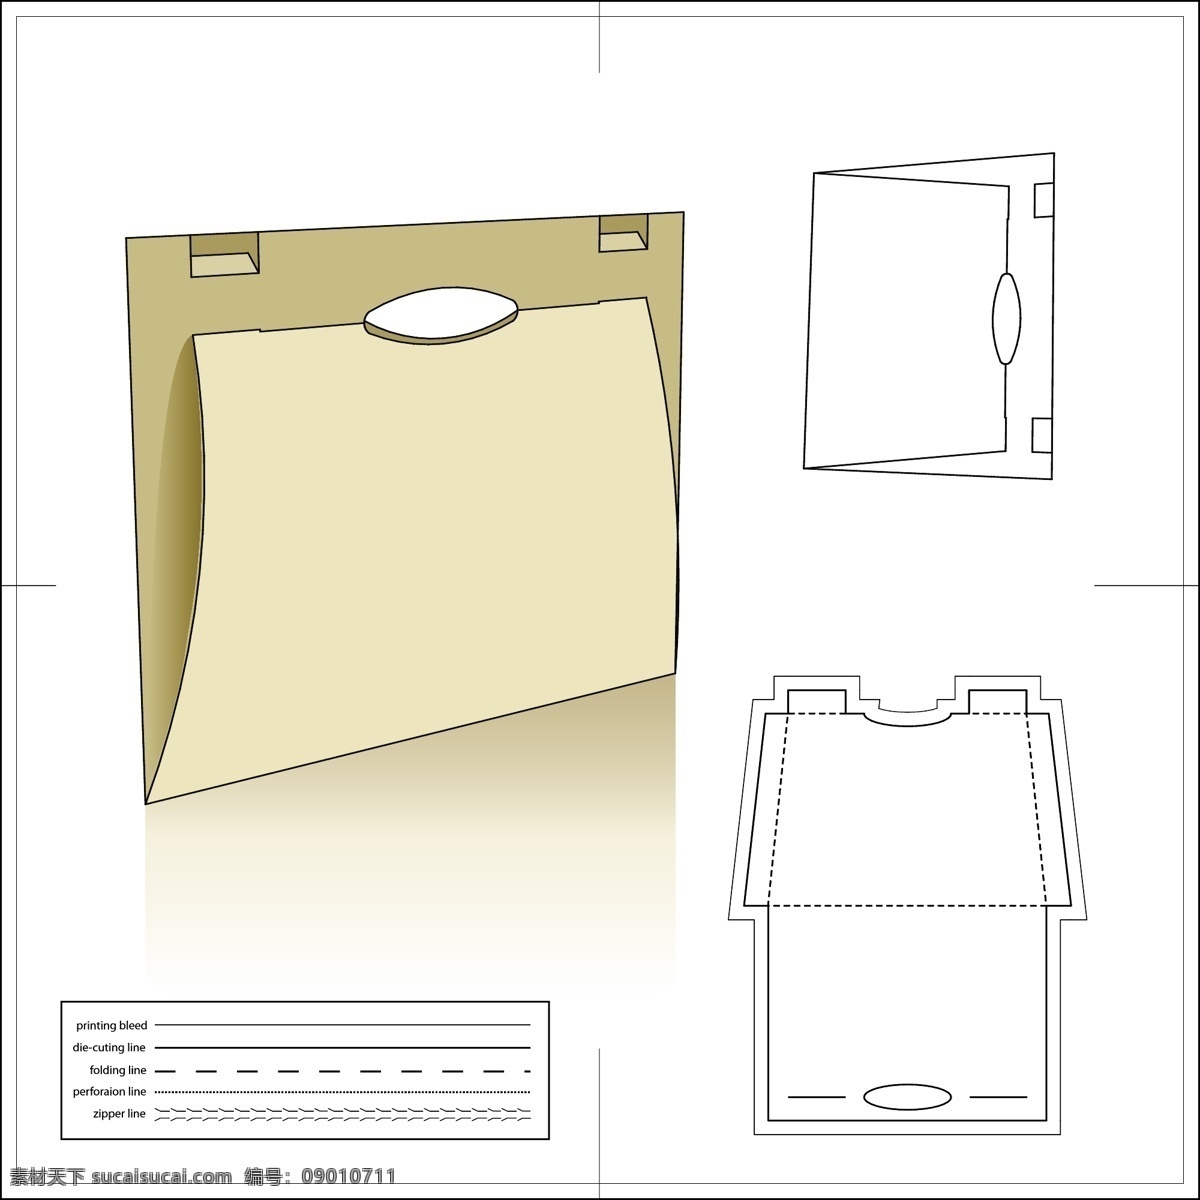 矢量 包装 模板 版式 包装盒 包装箱 刀版 矢量素材 文件袋 文件夹 异形板 纸盒 模切板 印刷版 矢量图